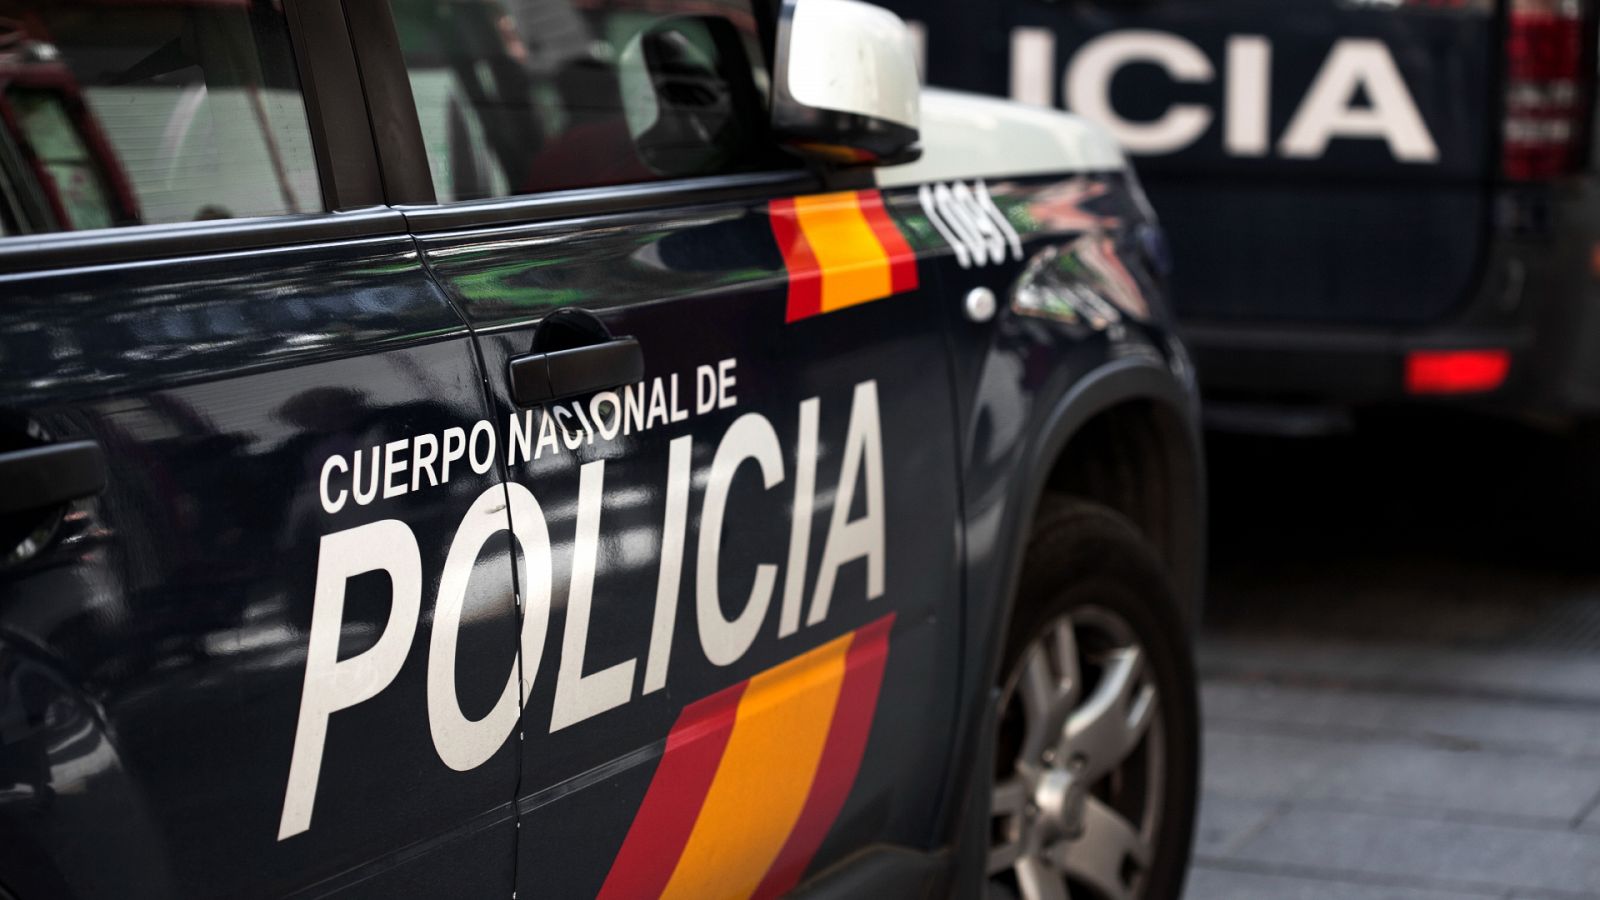 Boletines RNE - Un hombre asesina presuntamente a su hija de 3 años y se suicida en Madrid - Escuchar ahora